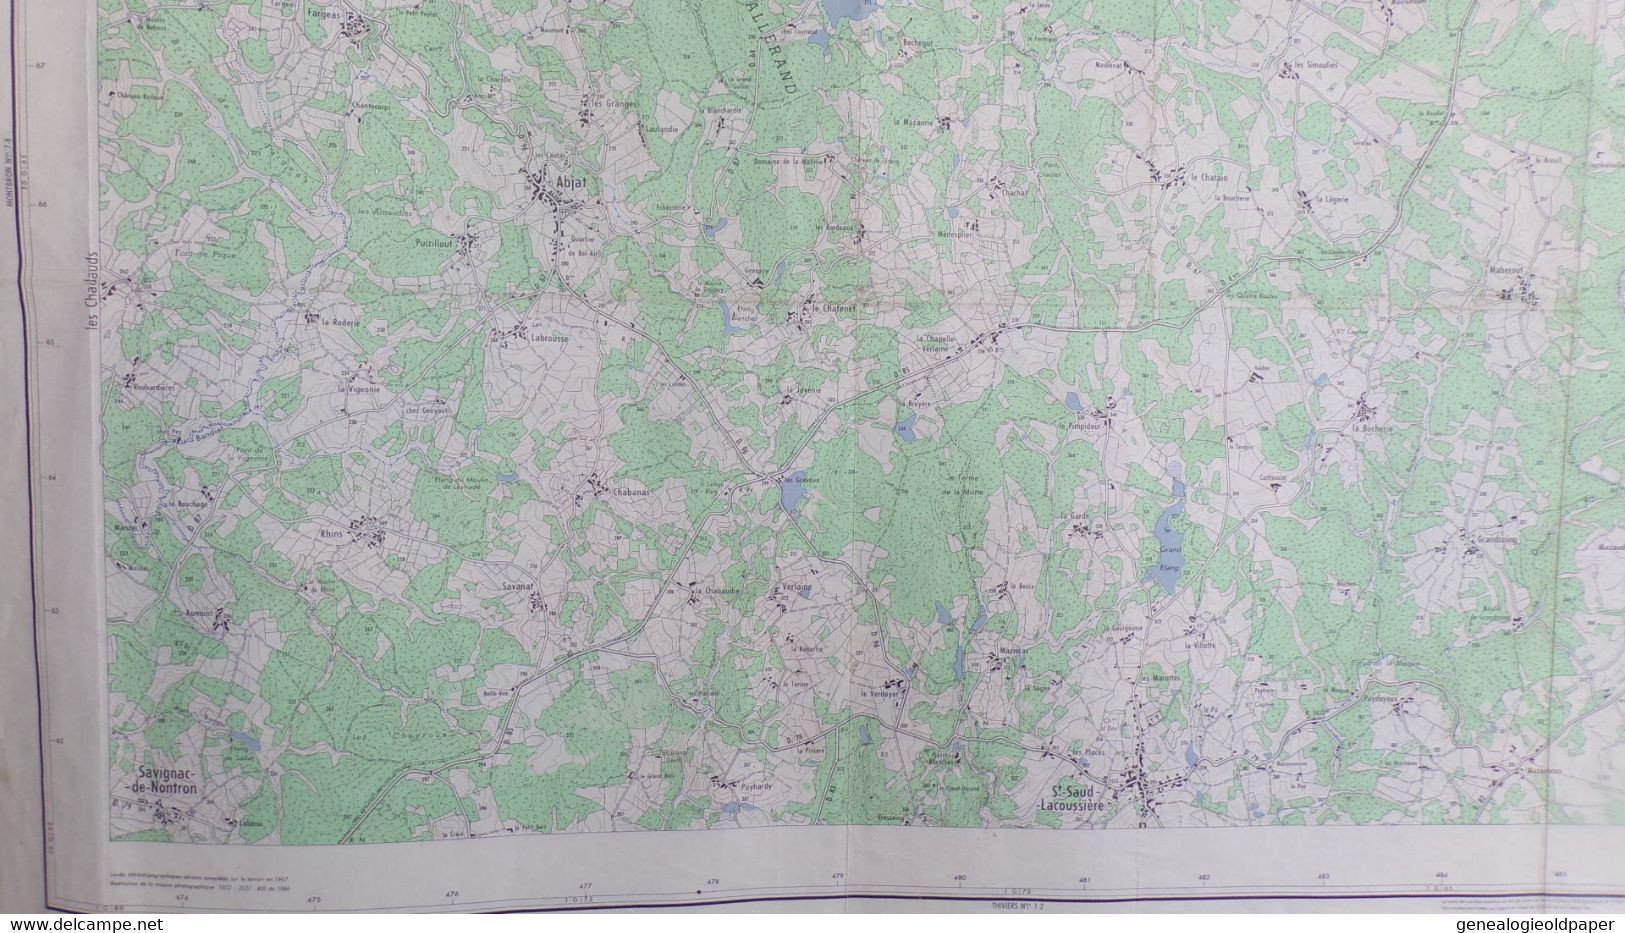 87-CHALUS-CARTE GEOGRAPHIQUE 1967-PENSOL-ABJAT-MARVAL-ST SAINT SAUD LACOUSSIERE-GRANDCOING-FARGEAS-DAVIGNAC NONTRON - Topographical Maps